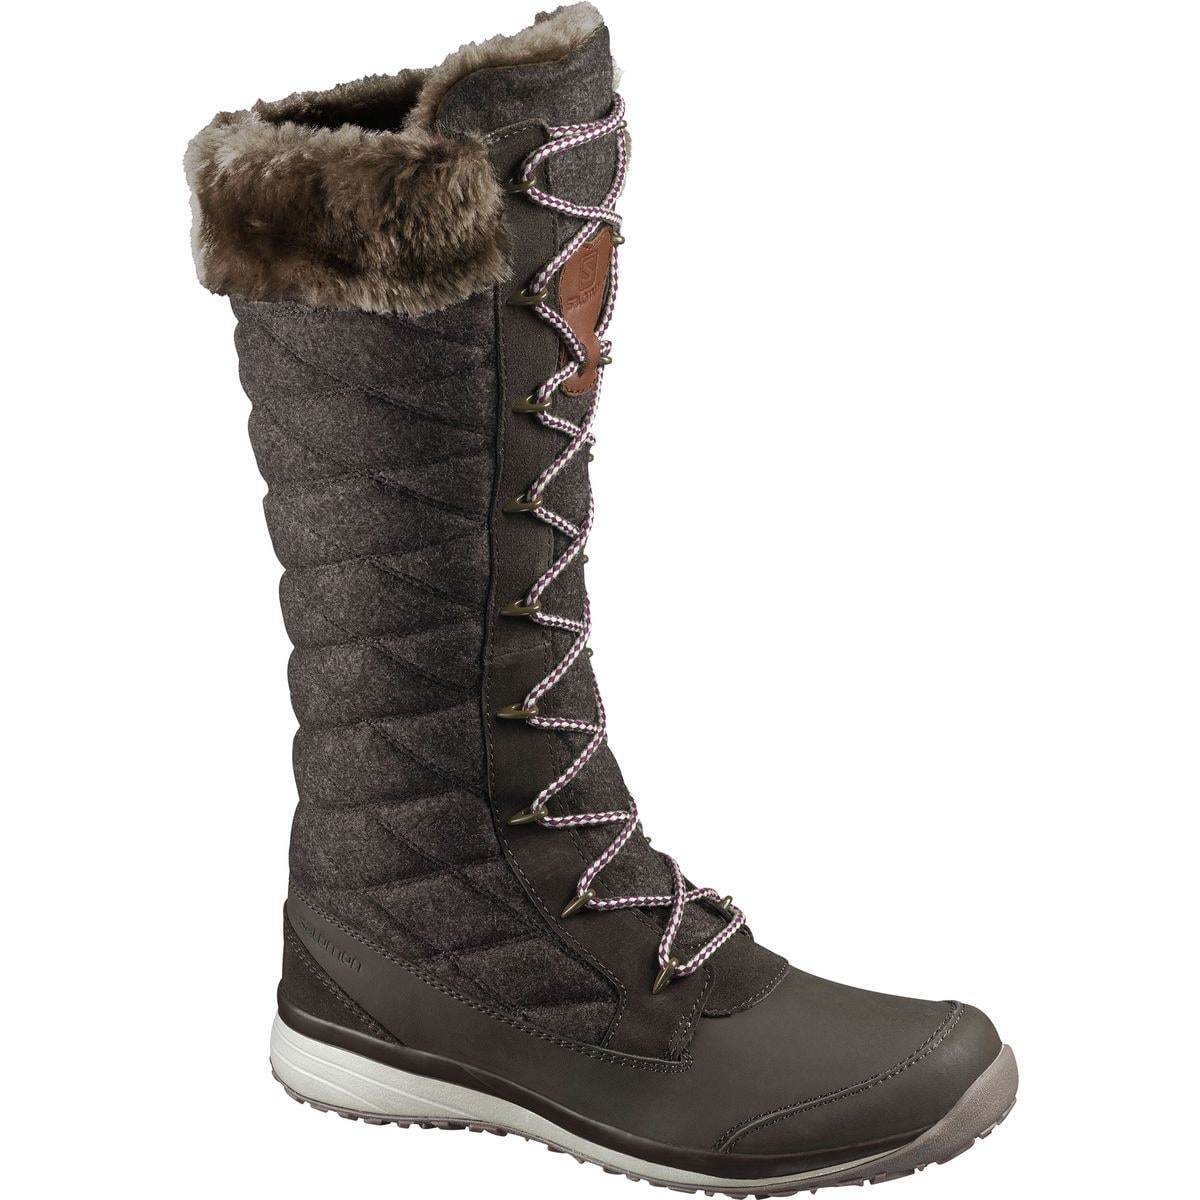 Salomon Hime High Winter Boot - Women's Footwear